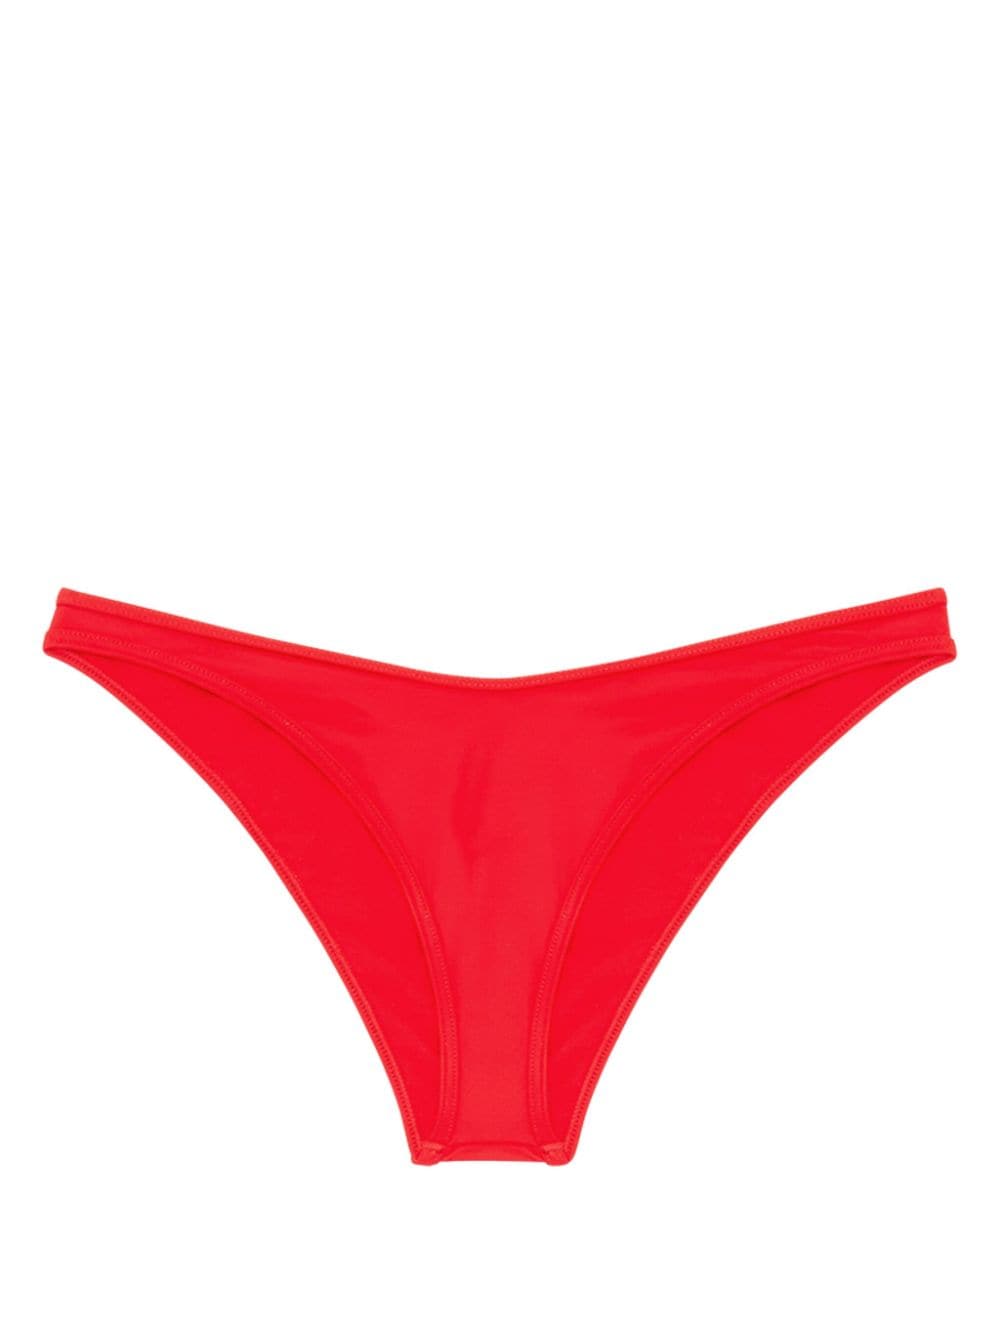 Diesel Bfpn-Punchy-X bikini bottoms - Red von Diesel